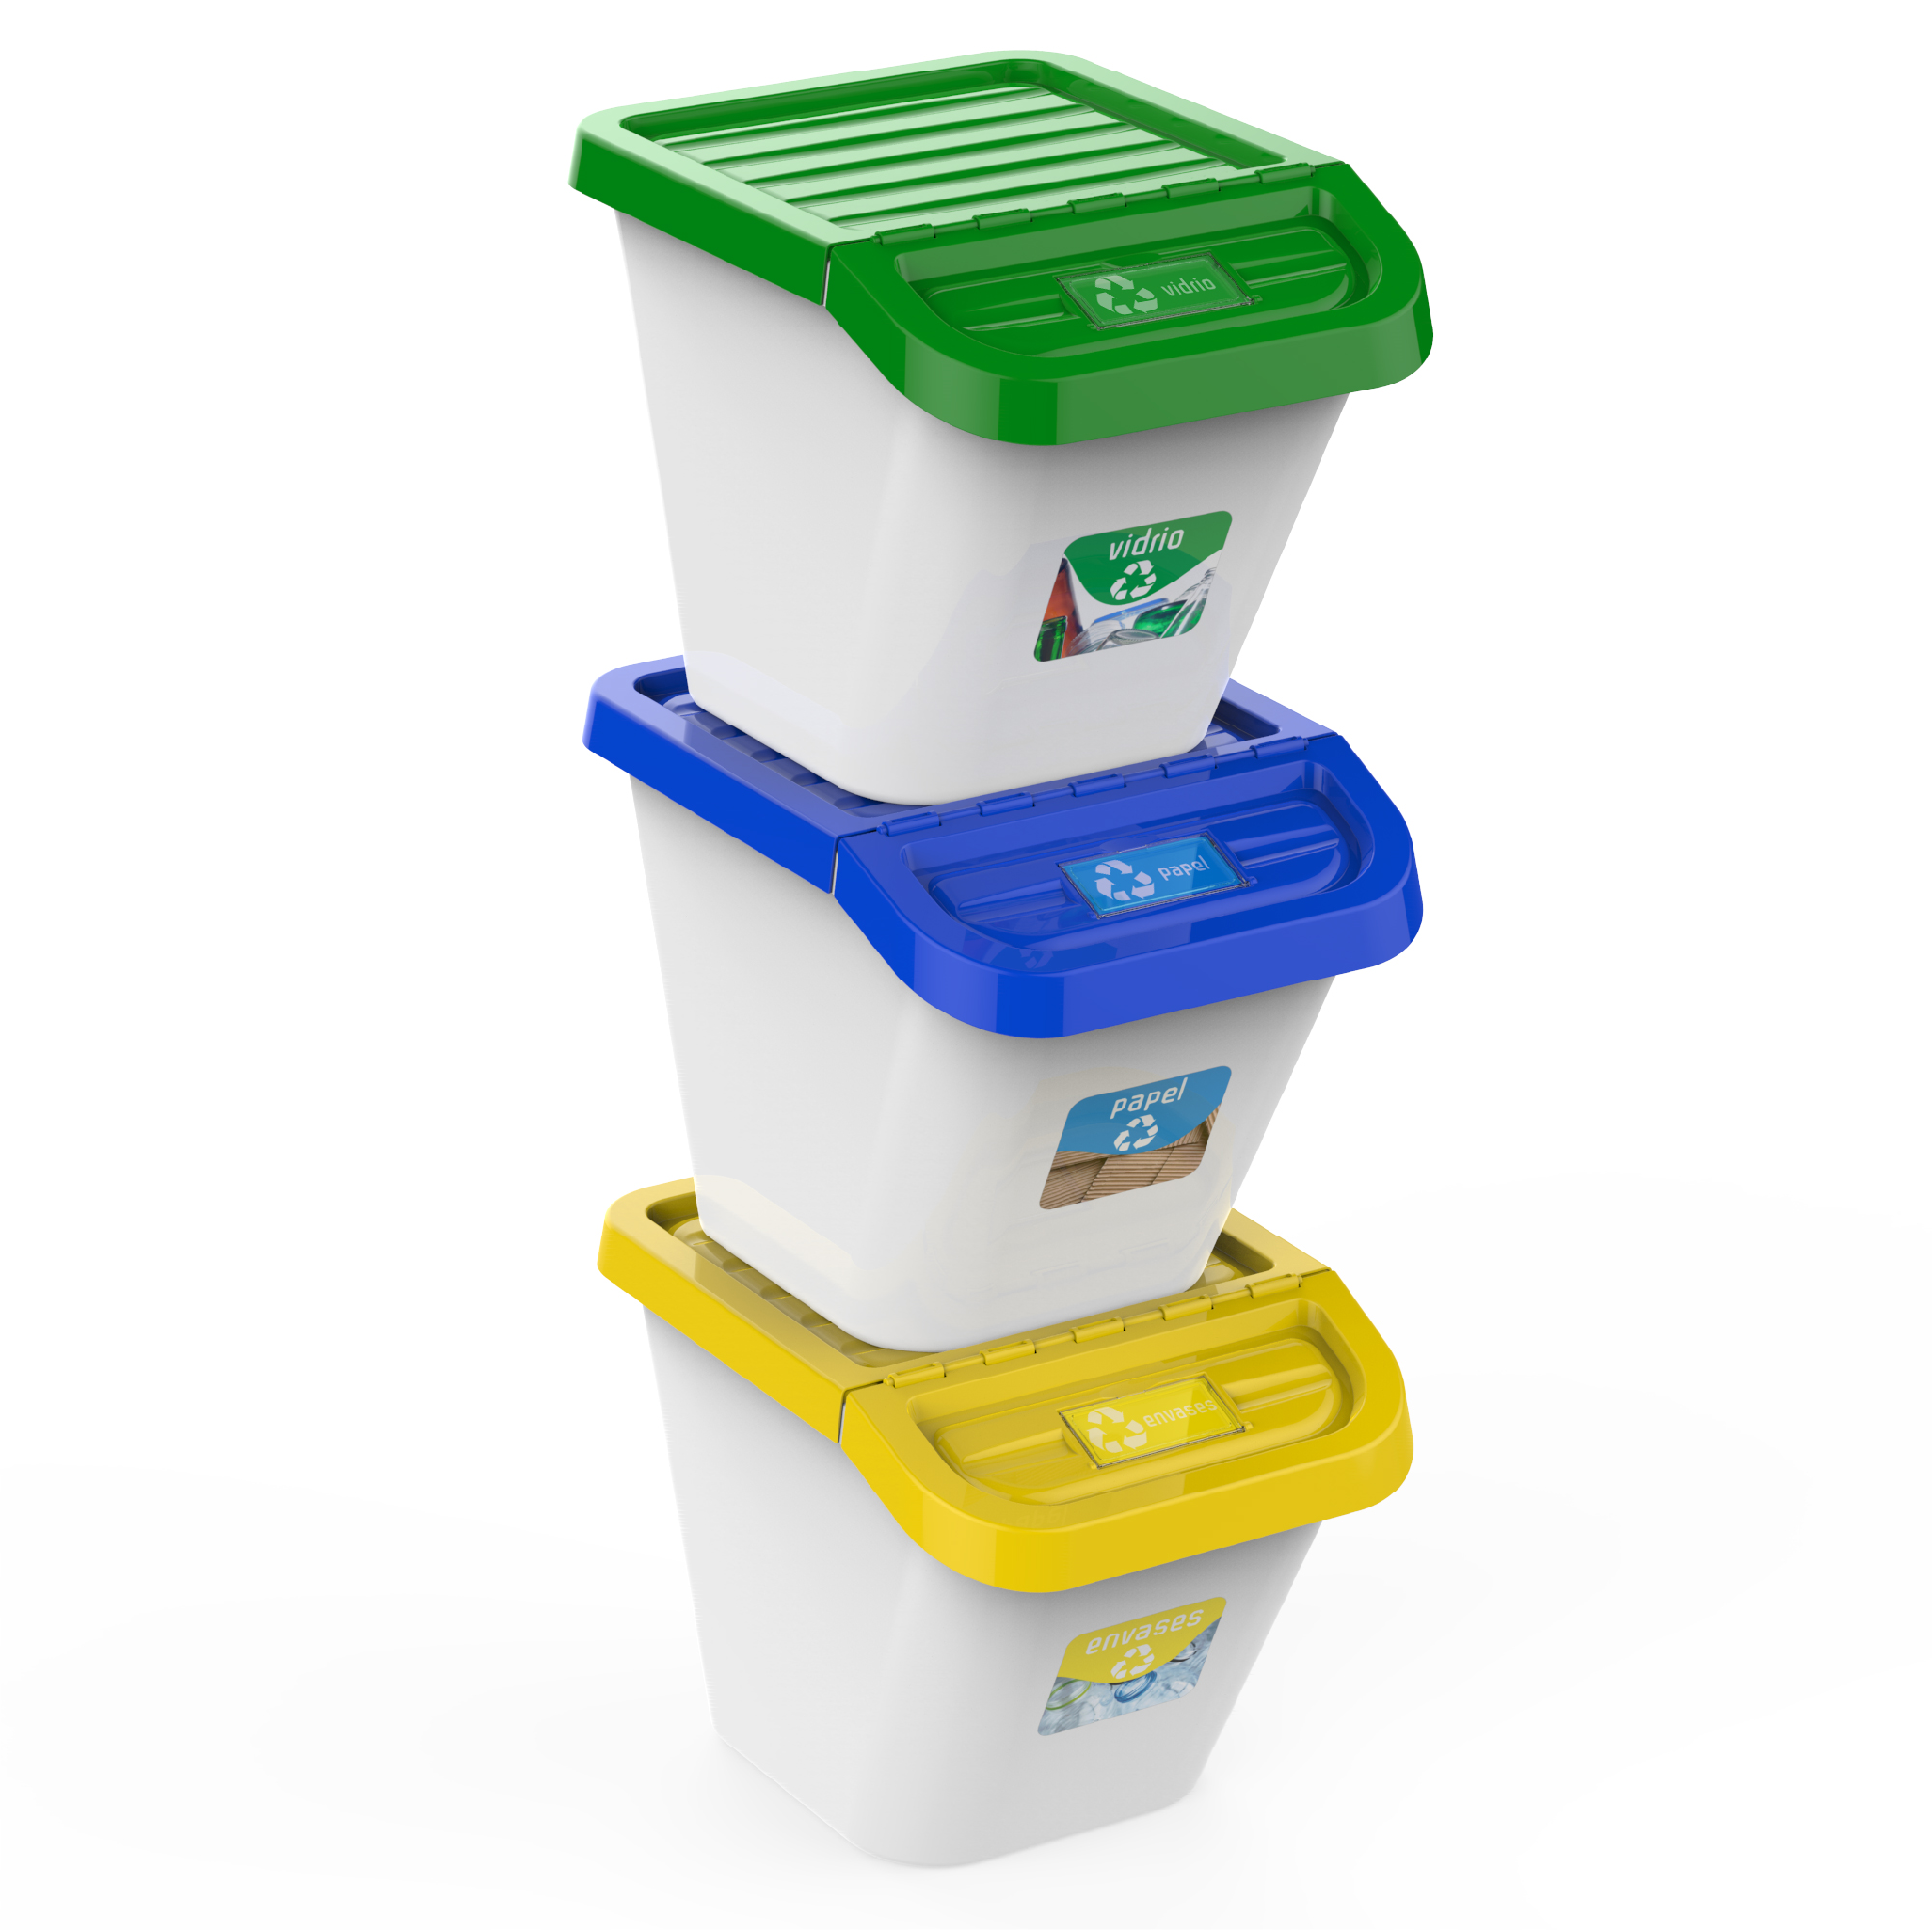 cubo basura reciclaje papelera baño cubos de basura cocina reciclar cubo  basura cocina cubo de basura